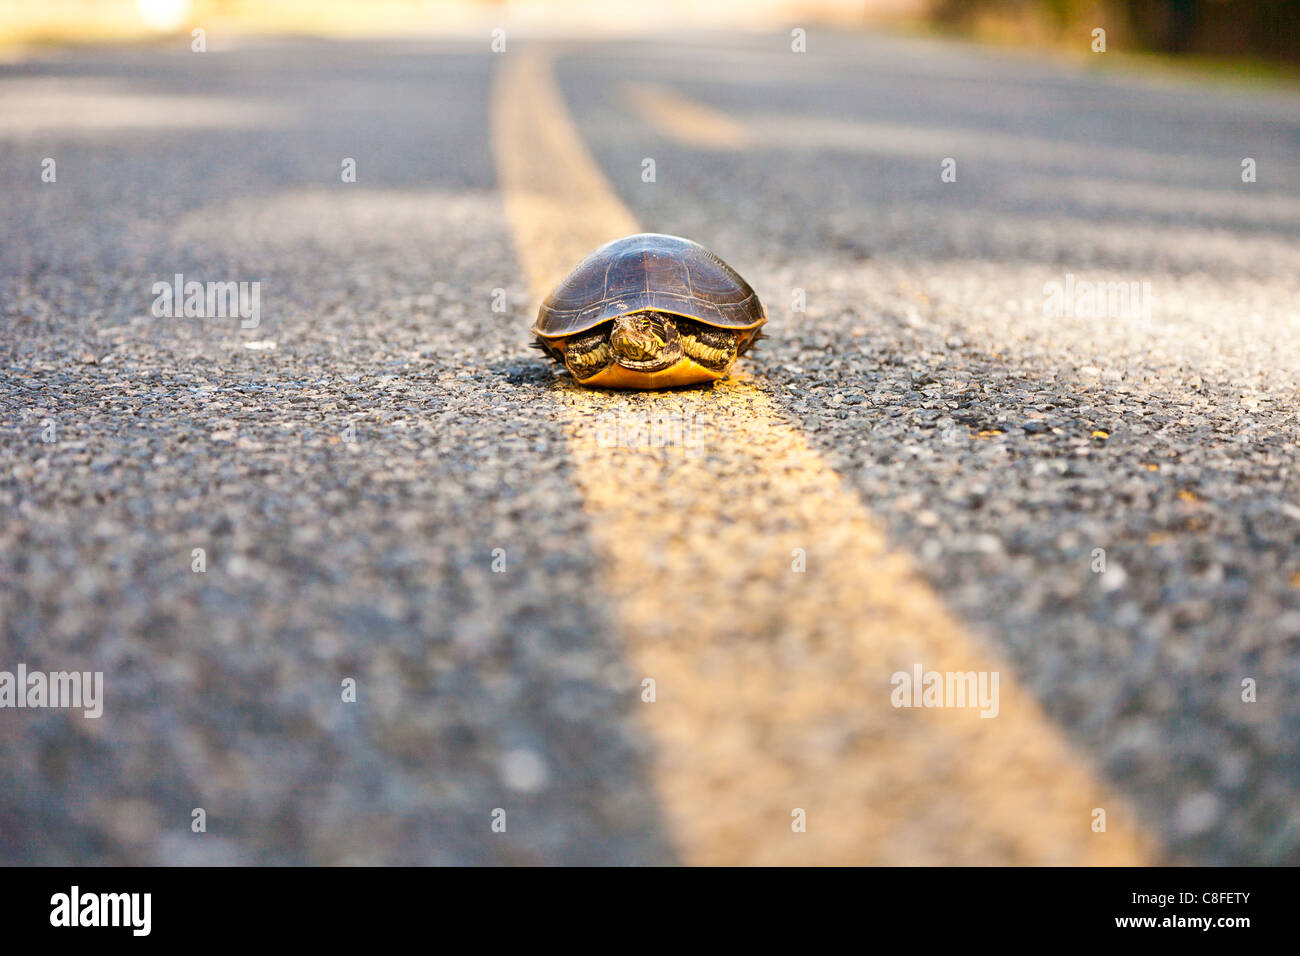 Halbinsel Cooter (Pseudemys Floridana Peninsularis) Schildkröte in der Nähe Mittellinie auf Asphaltstraße in Zentral-Florida Stockfoto